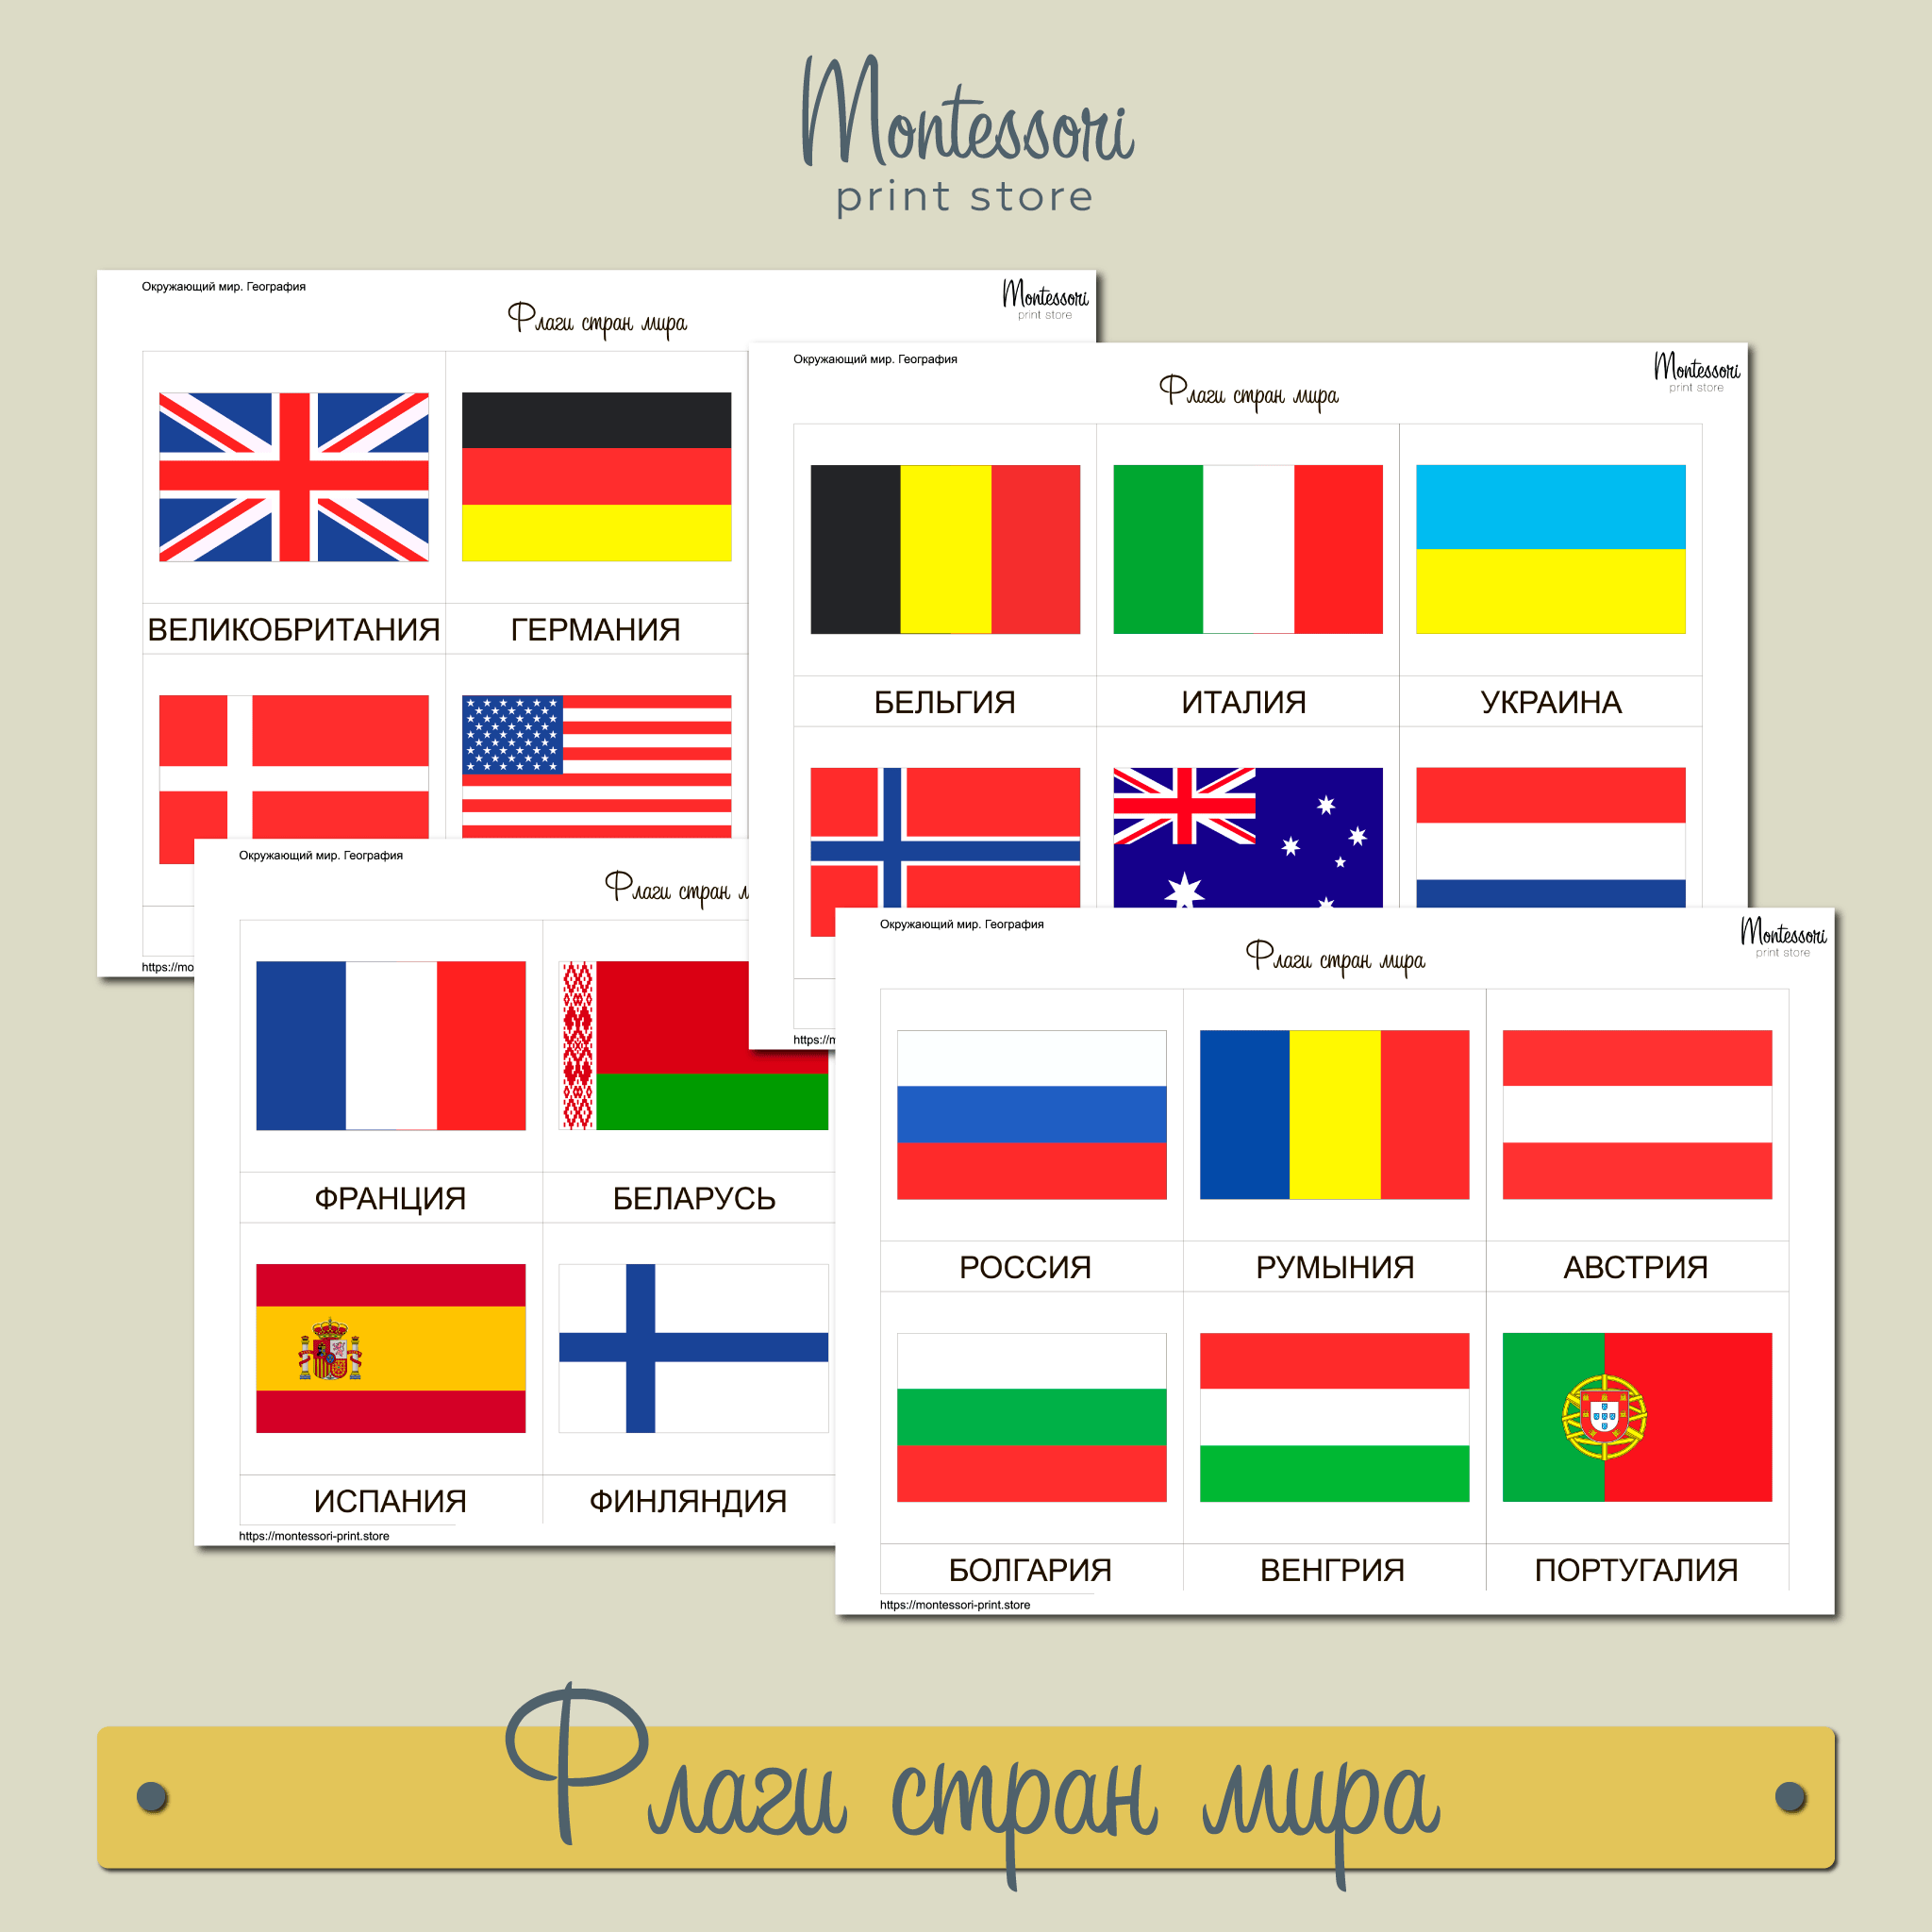 Флаг какой страны в форме квадрата. Флаги Евросоюза с названиями страны на русском языке. Флаги стран с названиями на русском на русском языке.